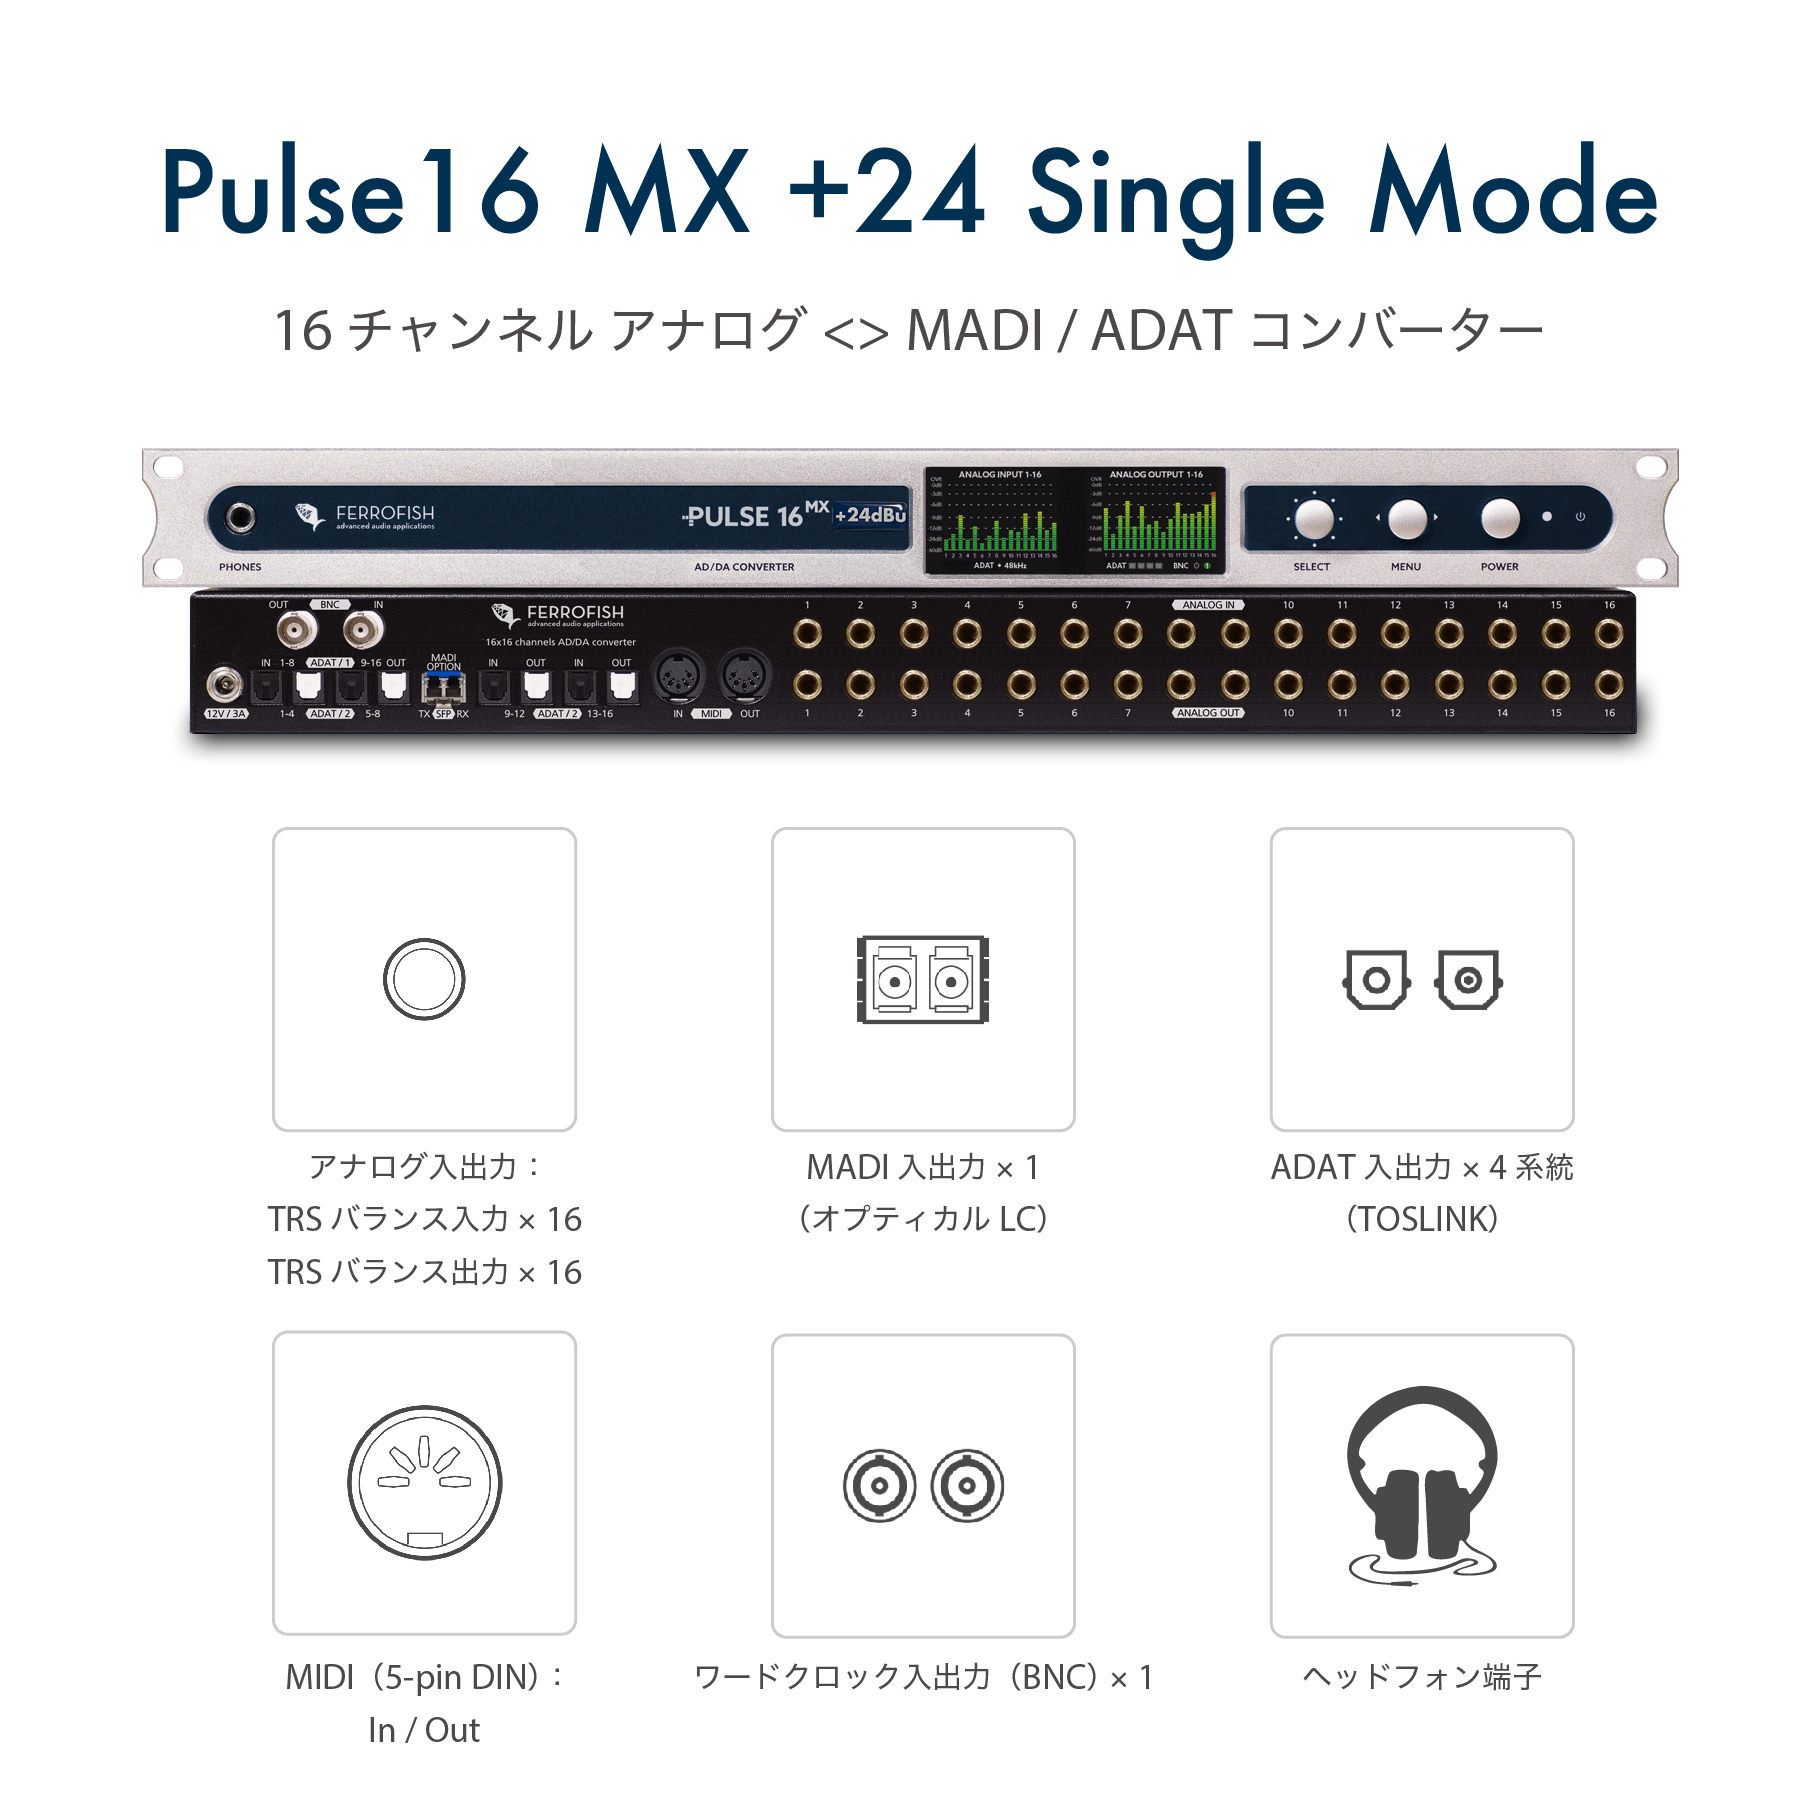 Pulse16 MX +24 Single Mode